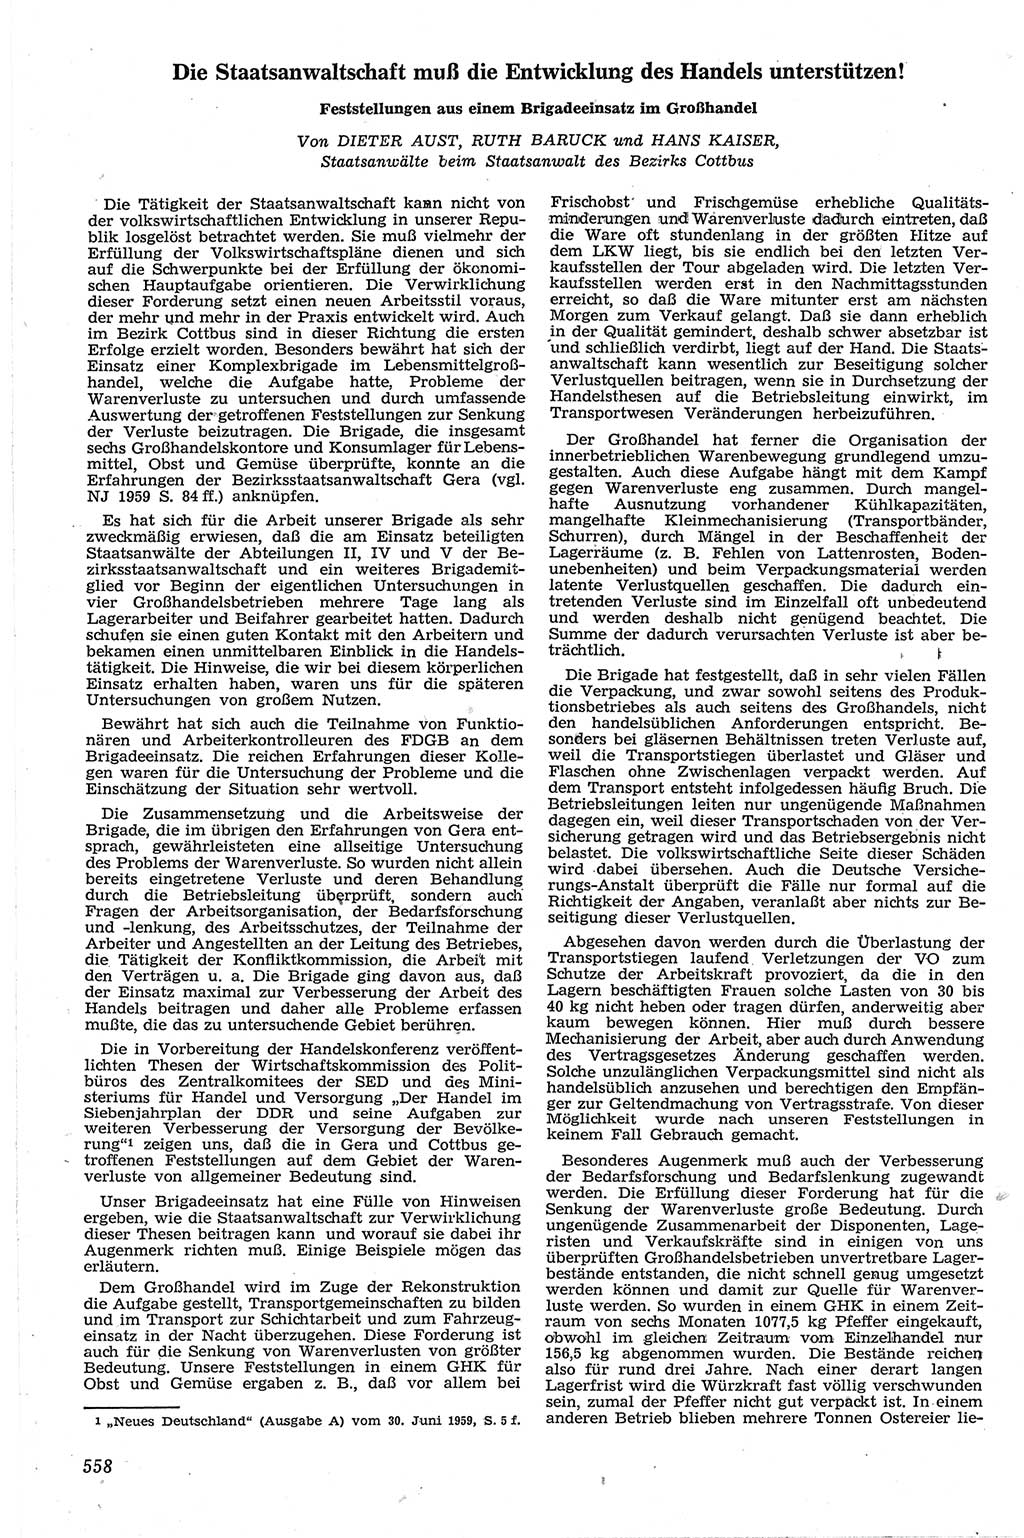 Neue Justiz (NJ), Zeitschrift für Recht und Rechtswissenschaft [Deutsche Demokratische Republik (DDR)], 13. Jahrgang 1959, Seite 558 (NJ DDR 1959, S. 558)